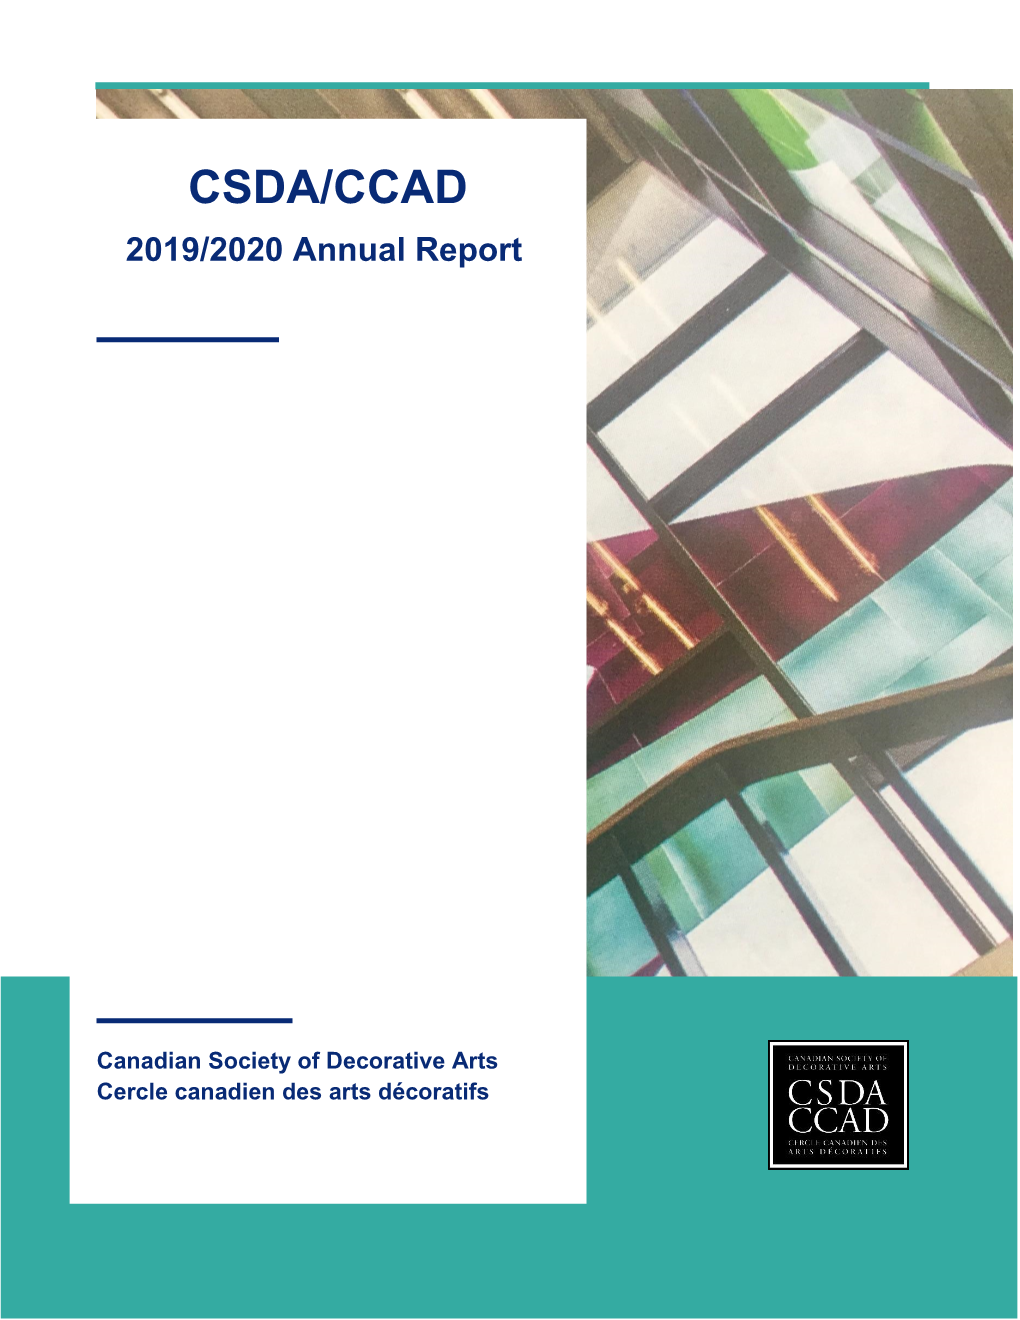 CSDA/CCAD 2019/2020 Annual Report